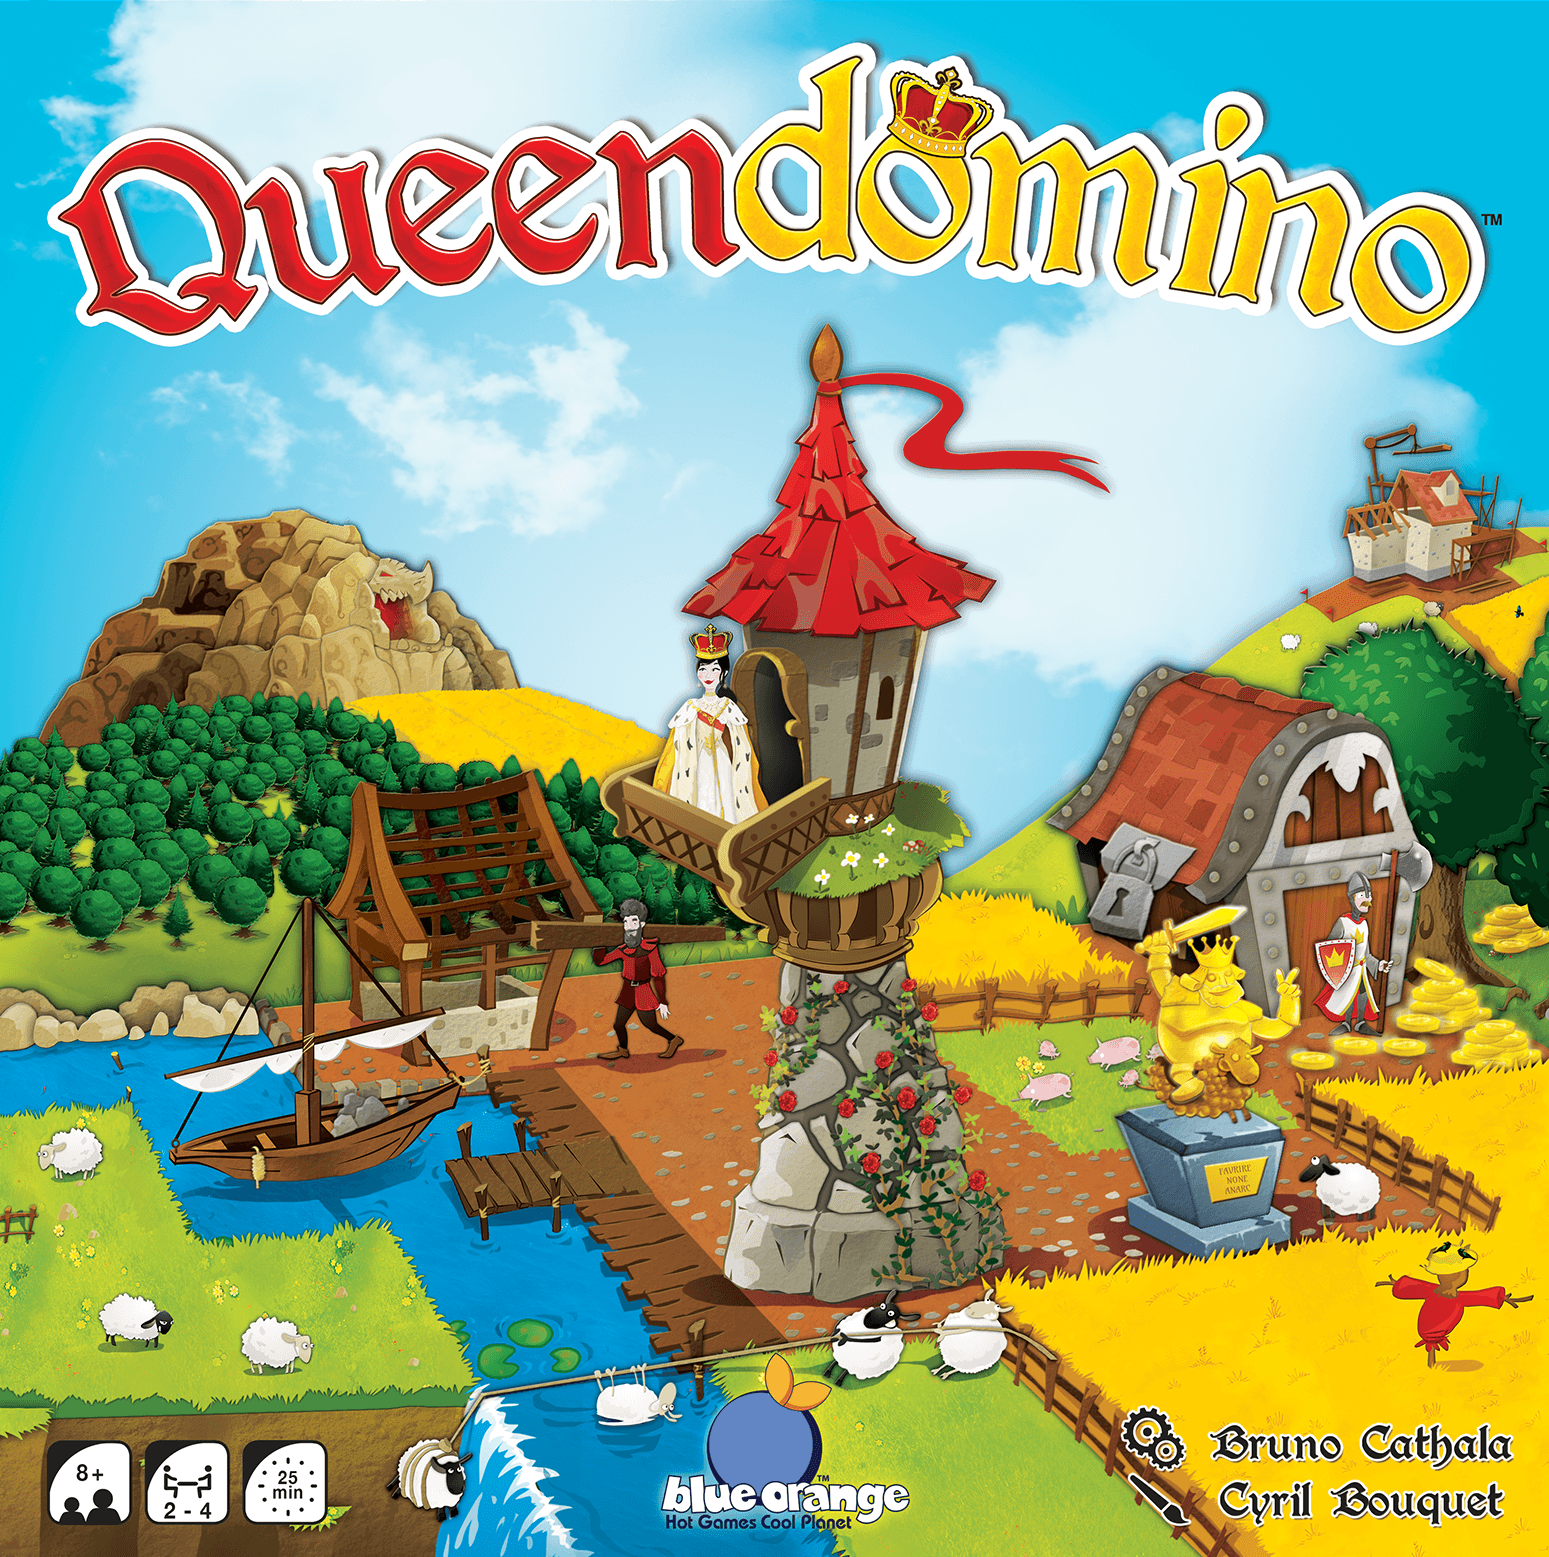 Queendomino (Retail Edition) Retail Board Game Blackrock Games KS800552A